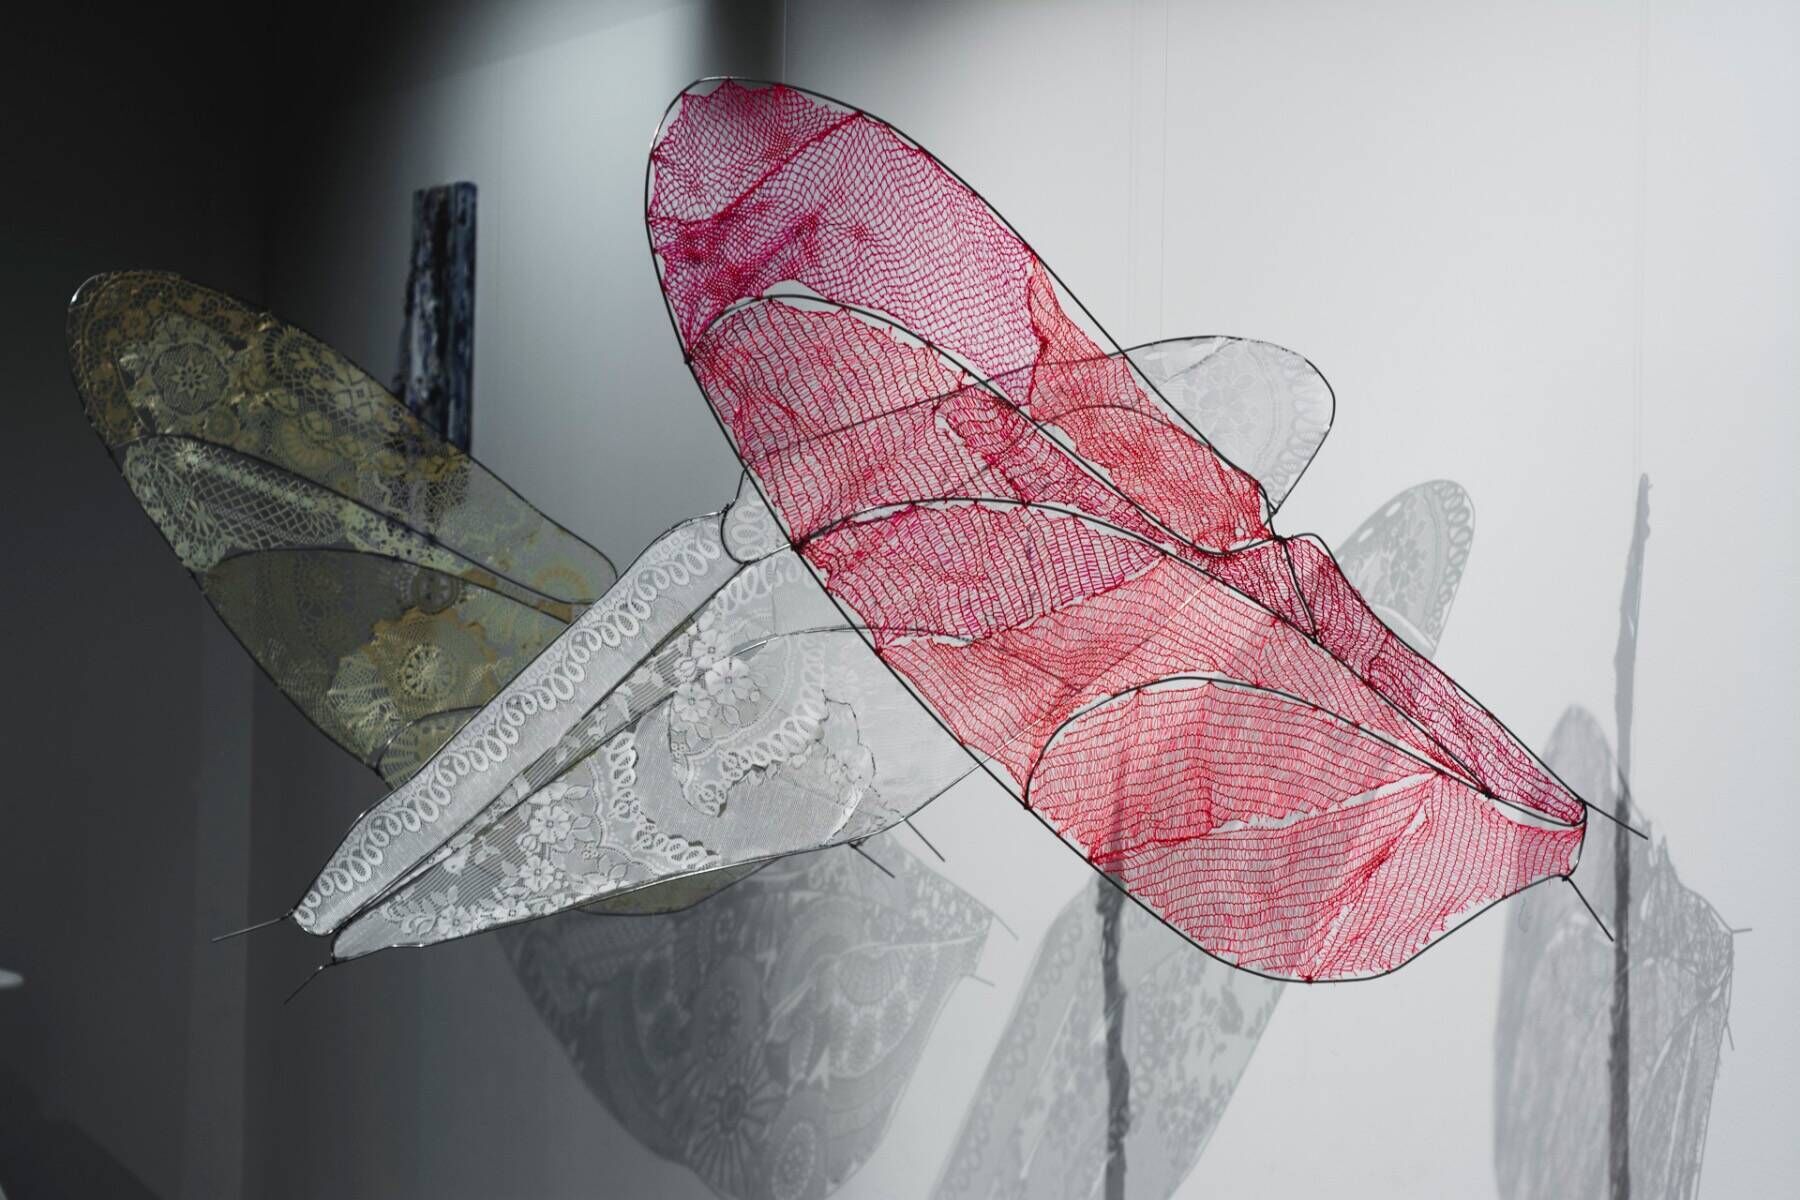 2017  Blickwinkel Eine Installation aus drei hängenden Libellenflügeln